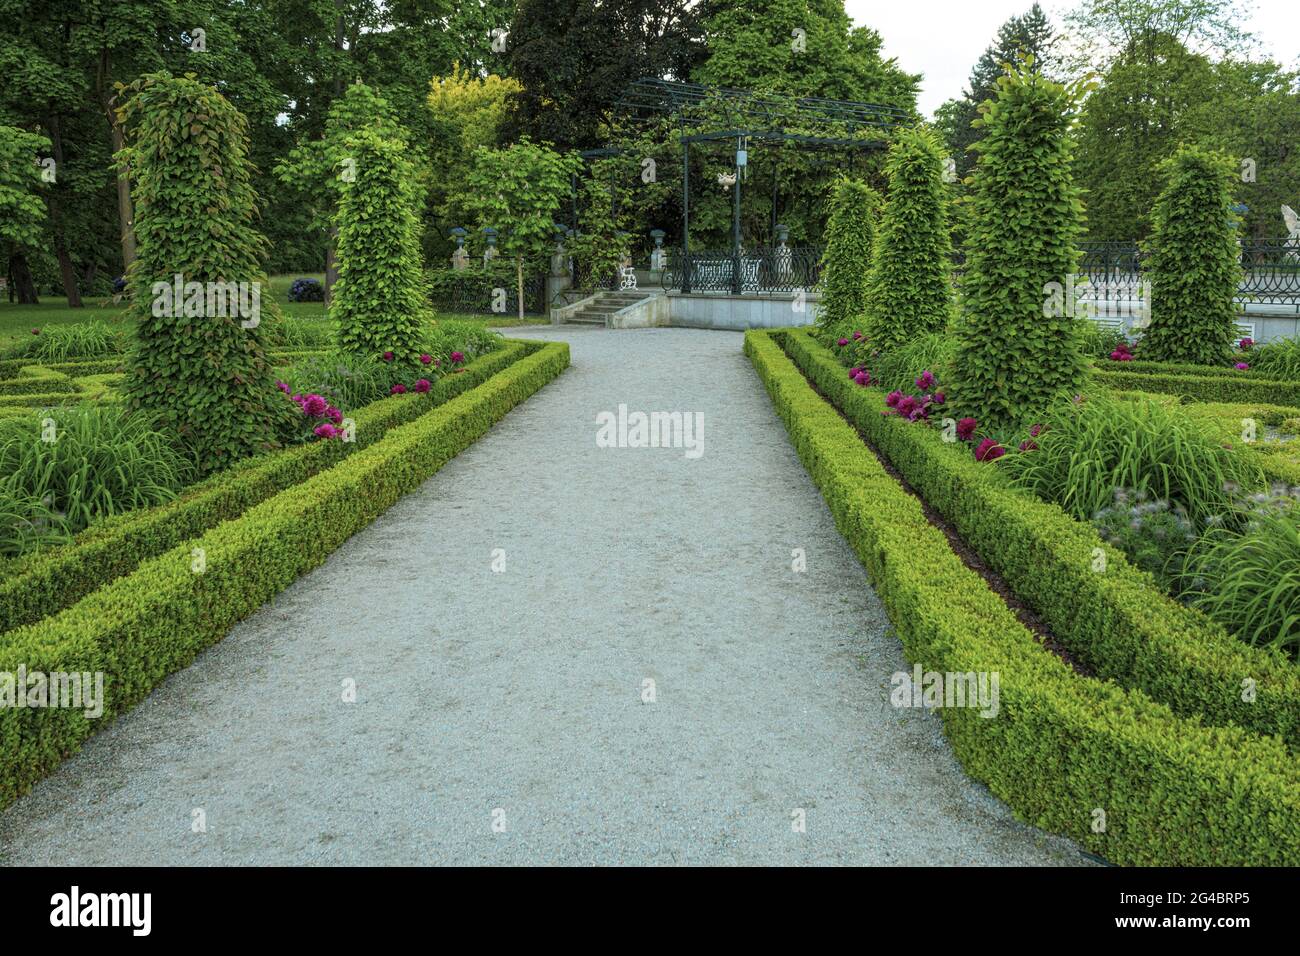 Splendidi e curati giardini al castello reale. Antico castello e parco reale vicino al castello Foto Stock